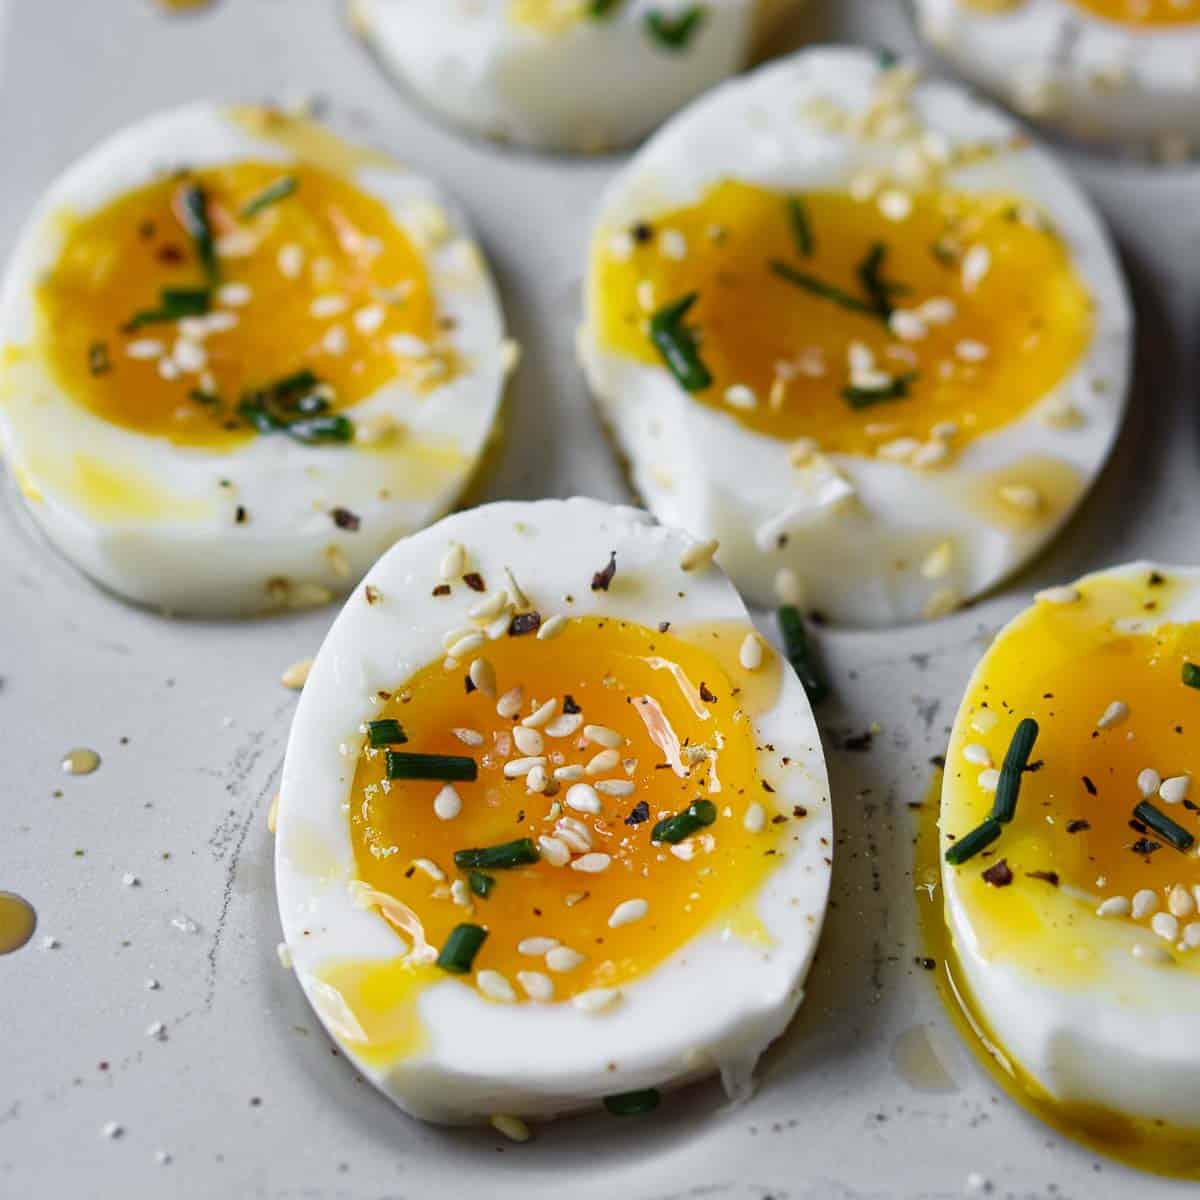 https://brunchandbatter.com/wp-content/uploads/2021/05/jammy-eggs-with-sesame-oil-FI.jpg